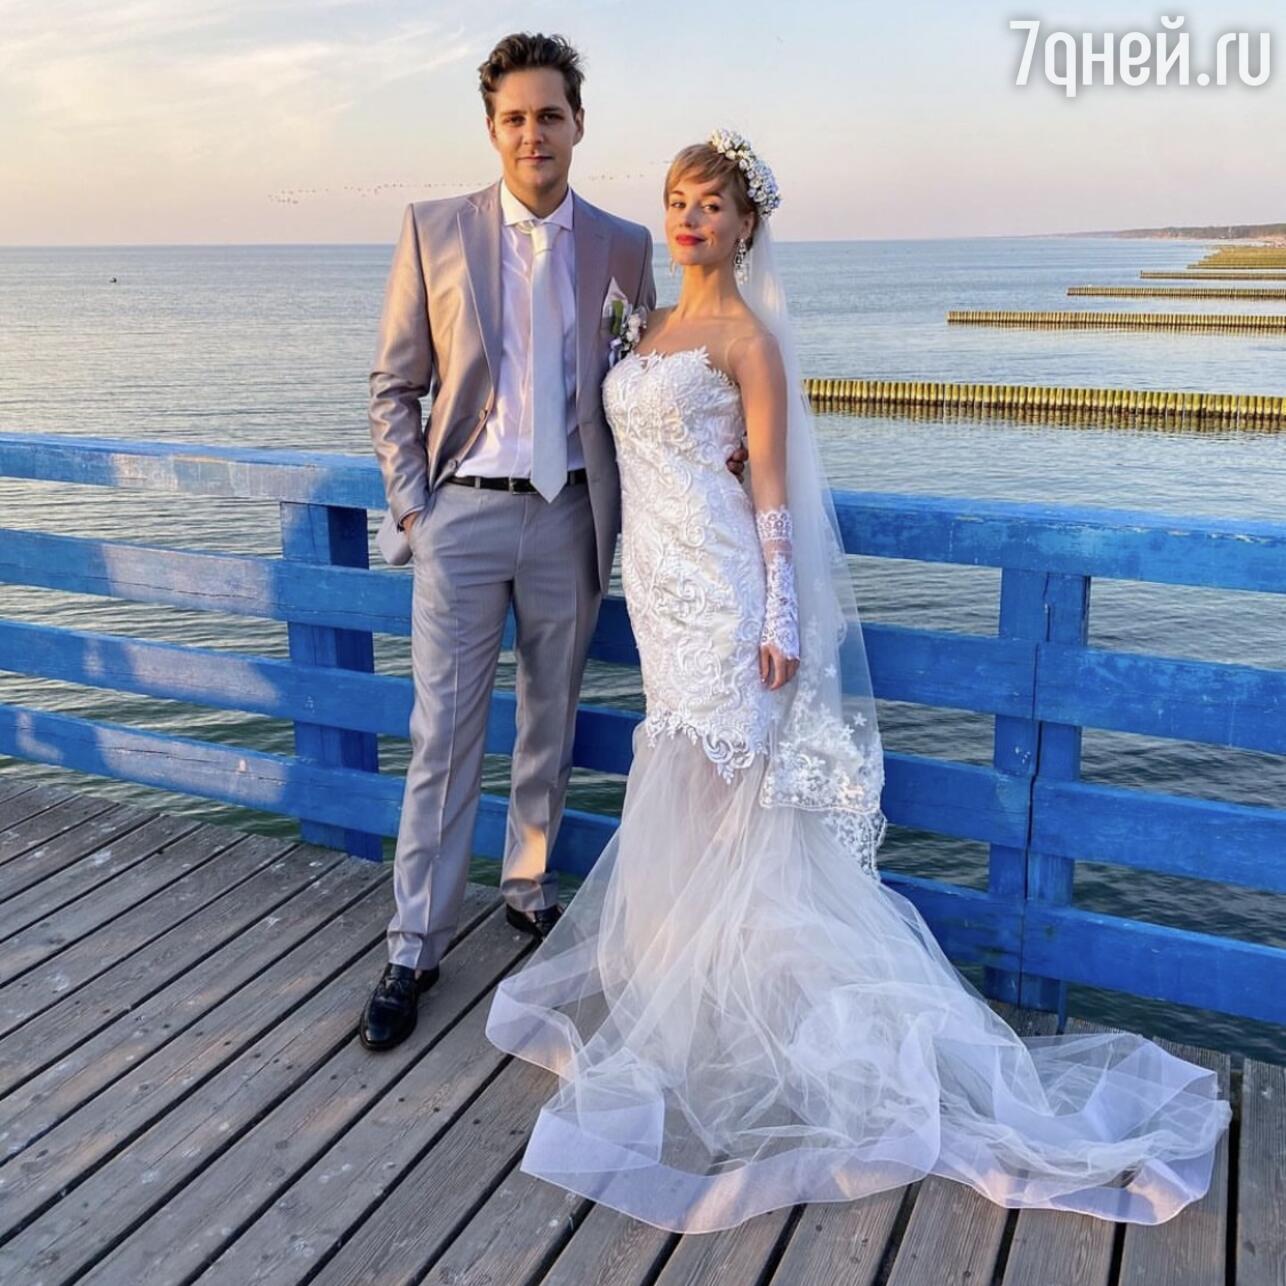 Фотографии со свадьбы беременной Екатерины Климовой и Гелы Месхи в сеть не попали